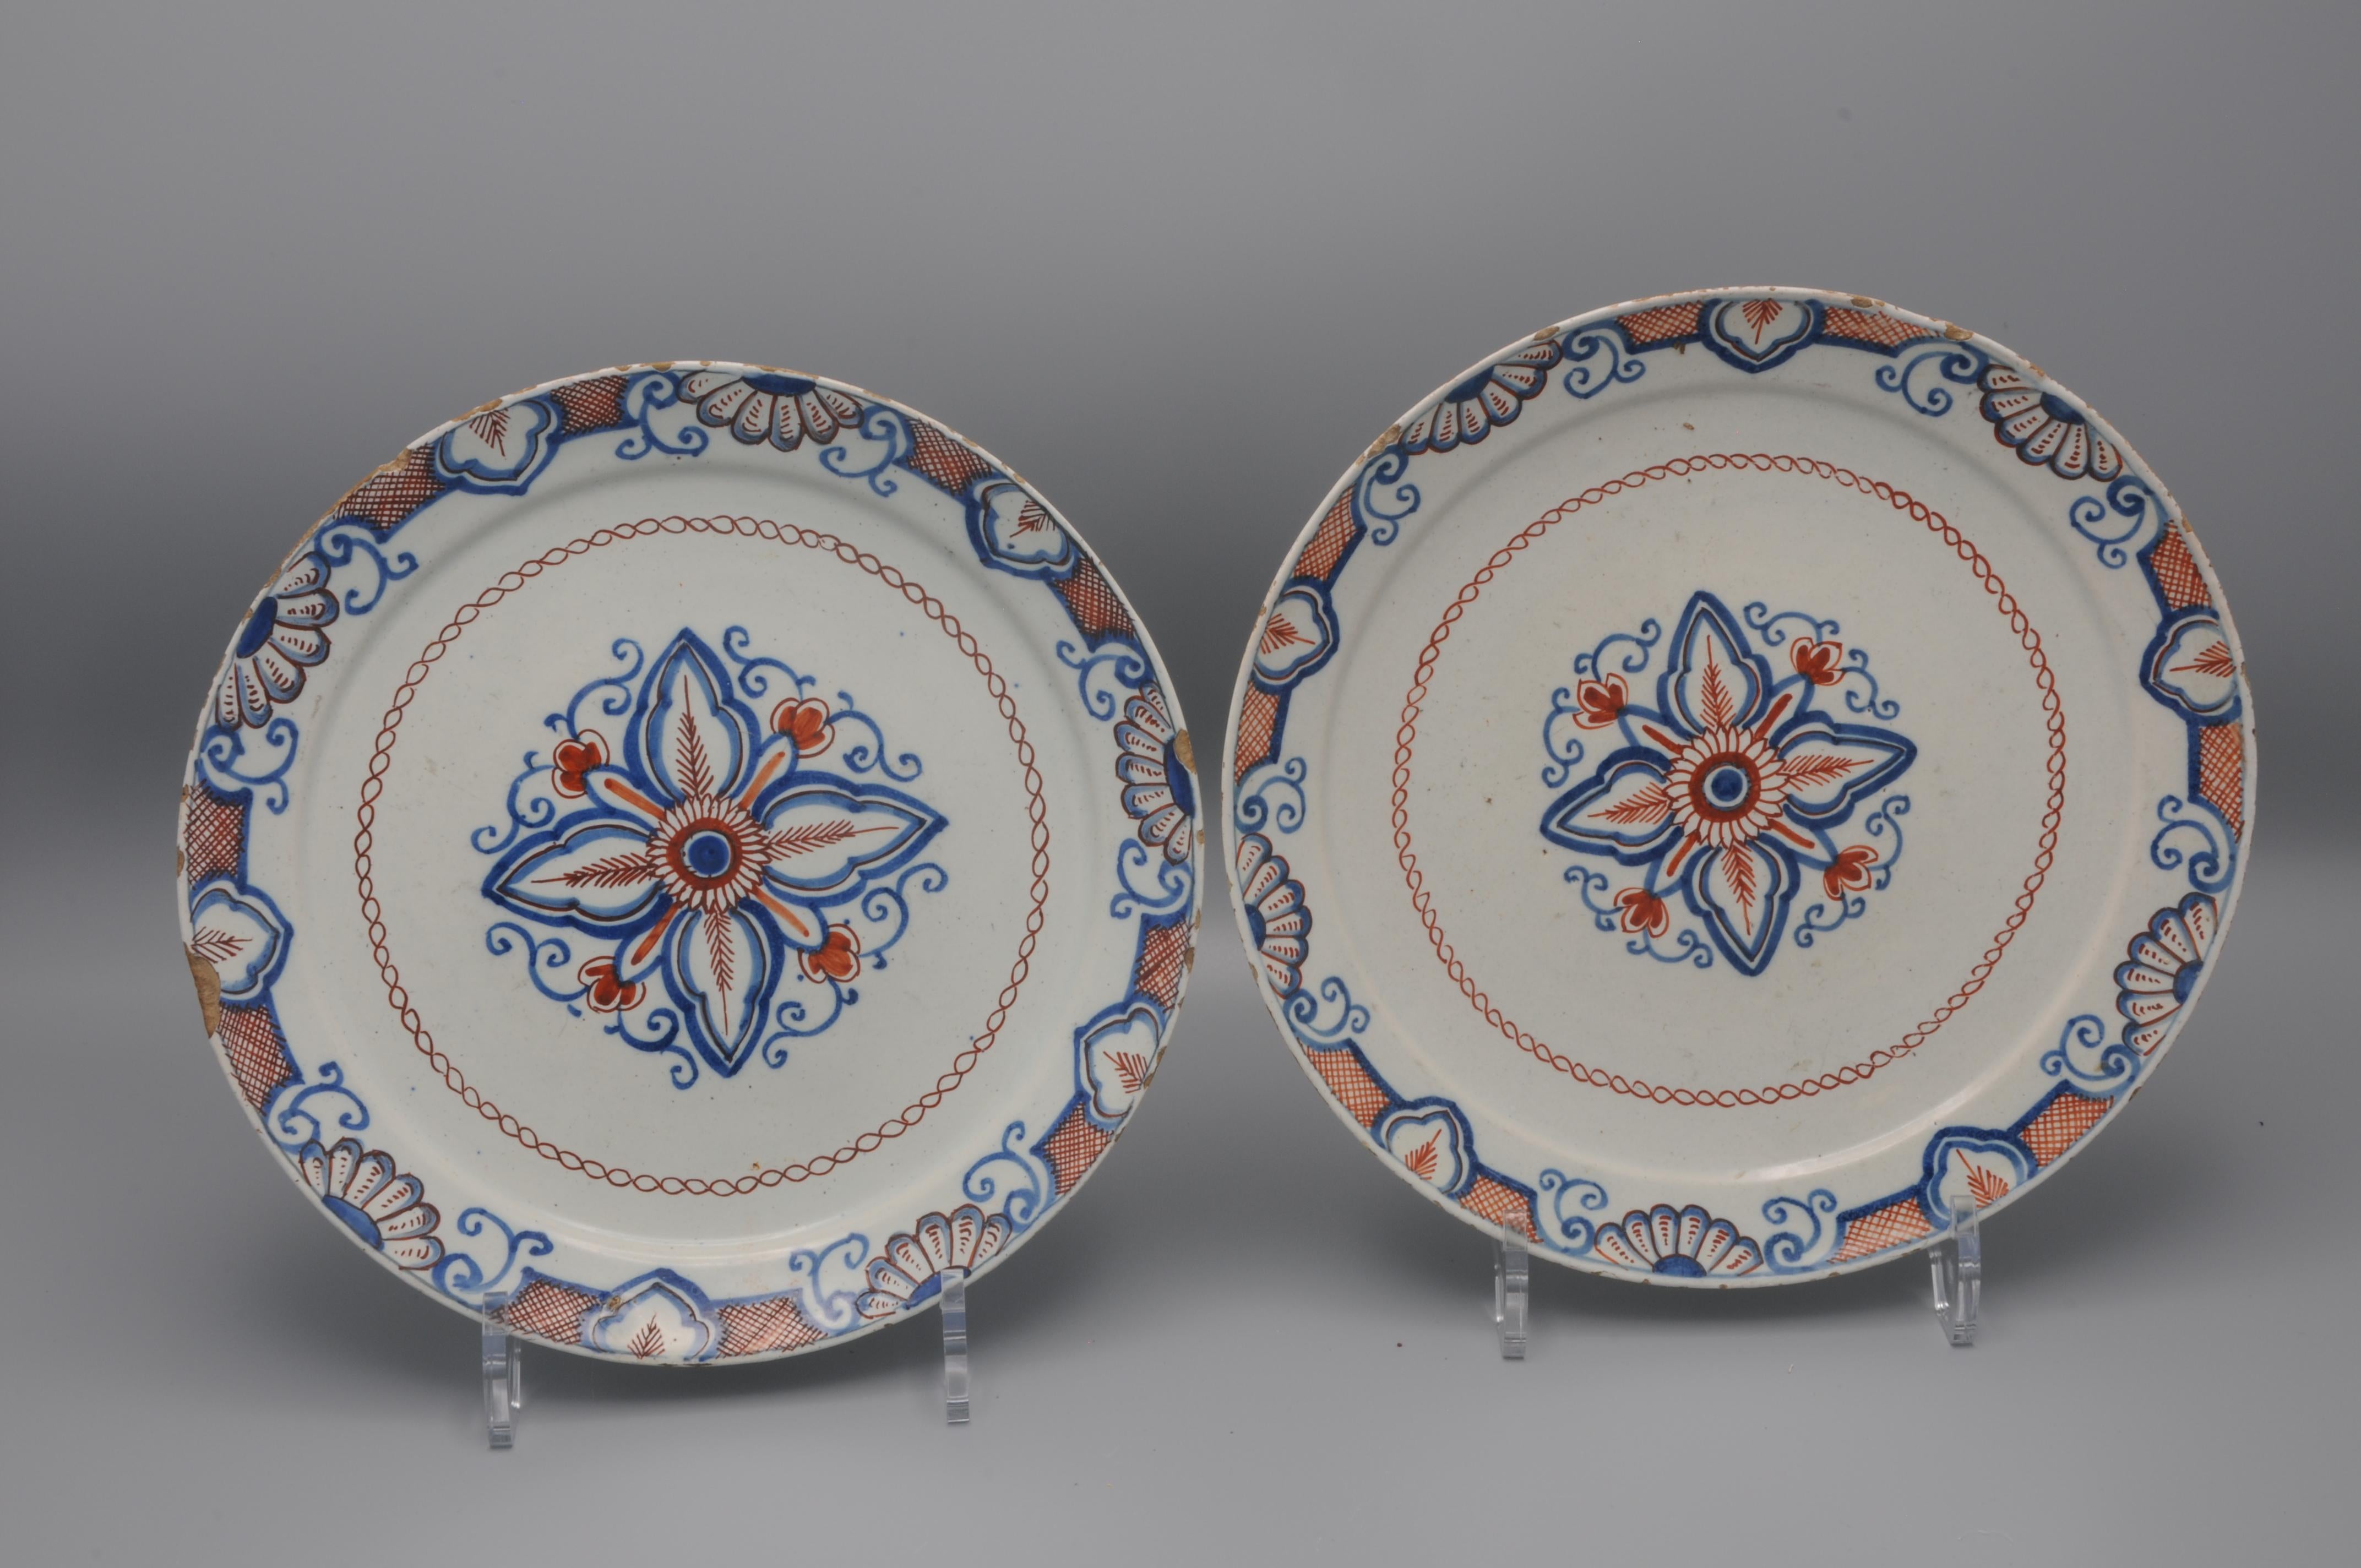 Ausgezeichnetes Paar Delfter Teller aus der Mitte des 18. Jahrhunderts mit einem seltenen geometrischen Dekor aus einer stilisierten Blume mit Blattranken. 
Die Bordüre ist mit Blättern und Muscheln im Stil von Daniel Marot verziert. 

Gezeichnet